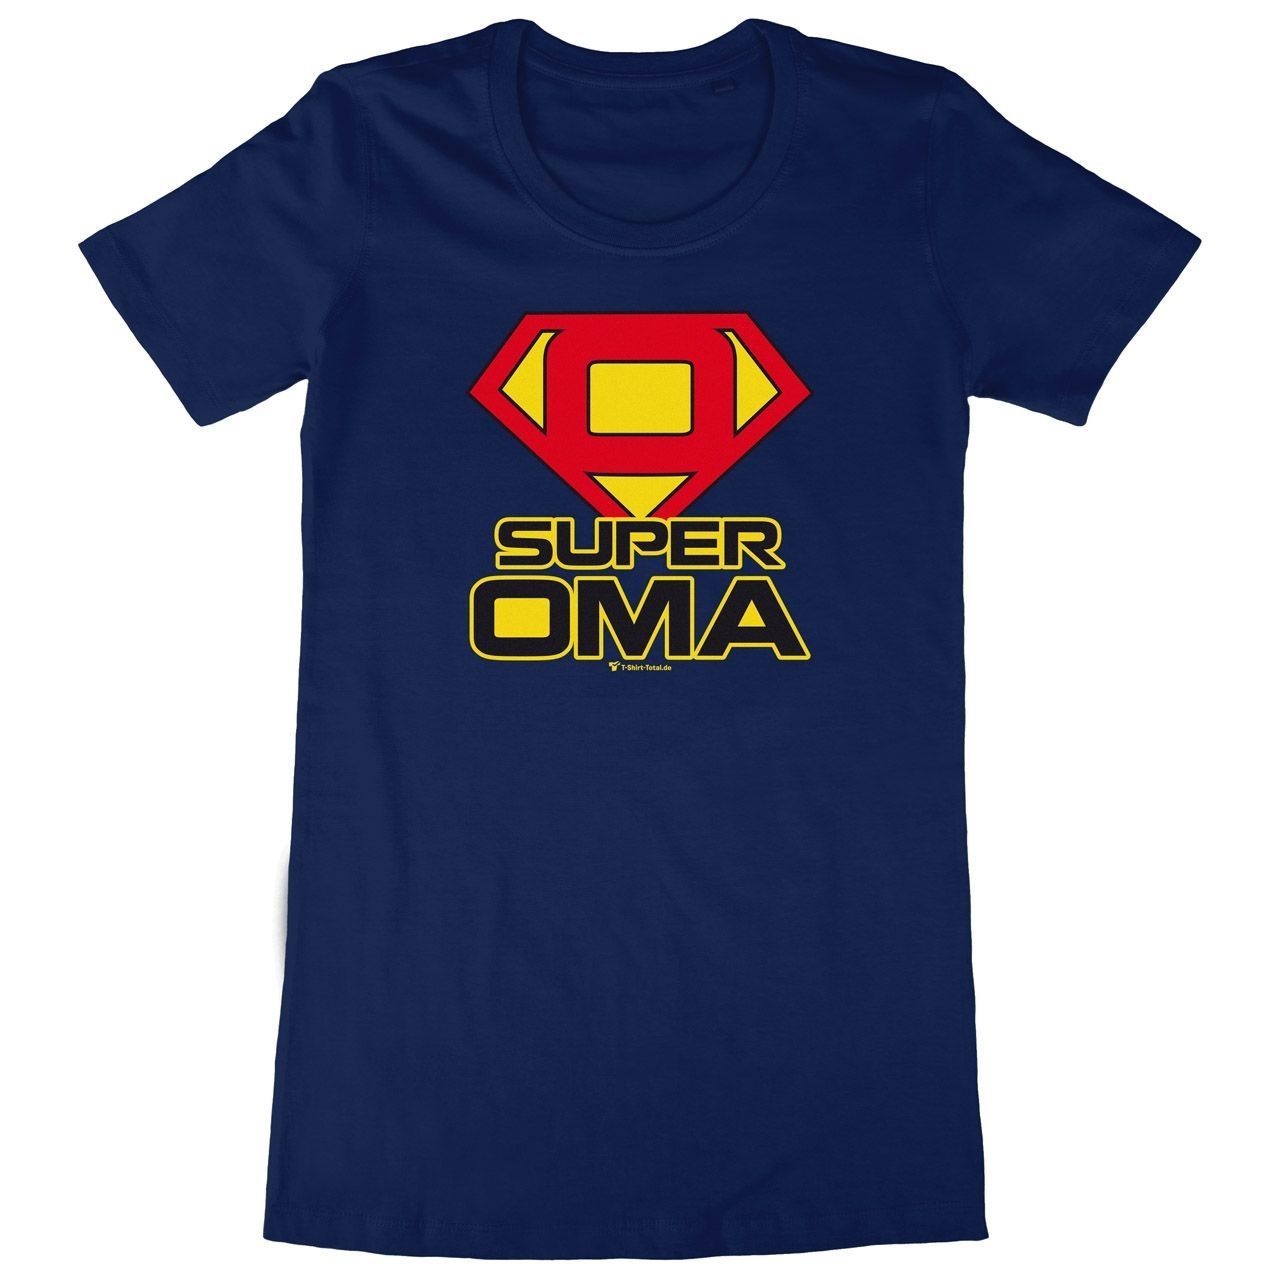 Super Oma Woman Long Shirt navy Small